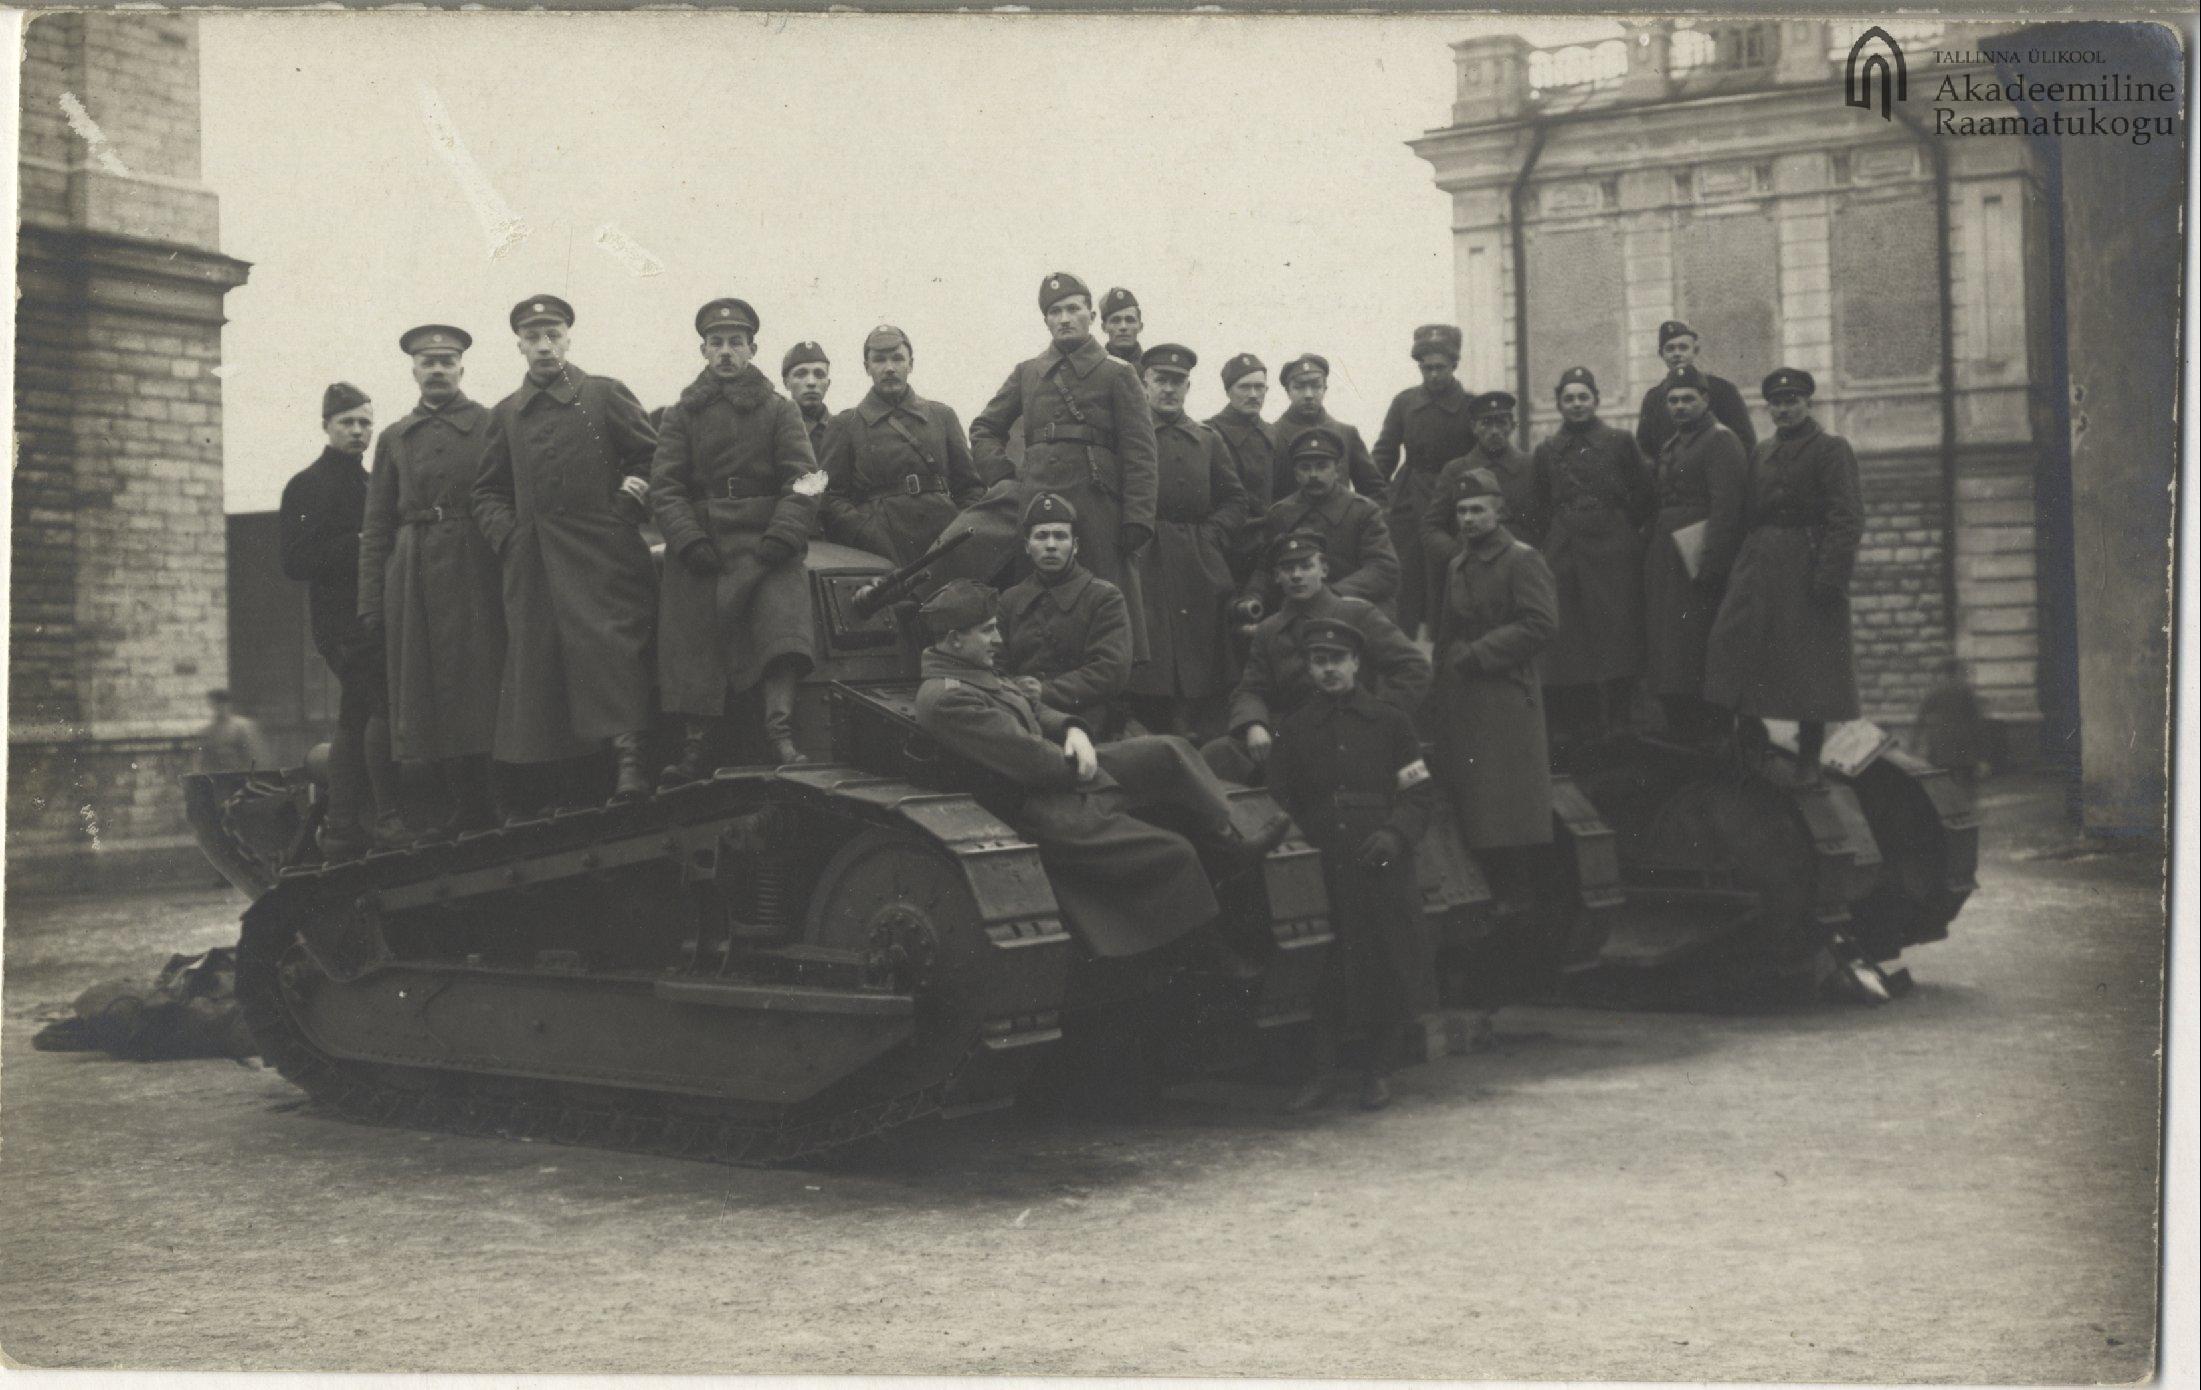 Tallinn. Defense Forces car tank division